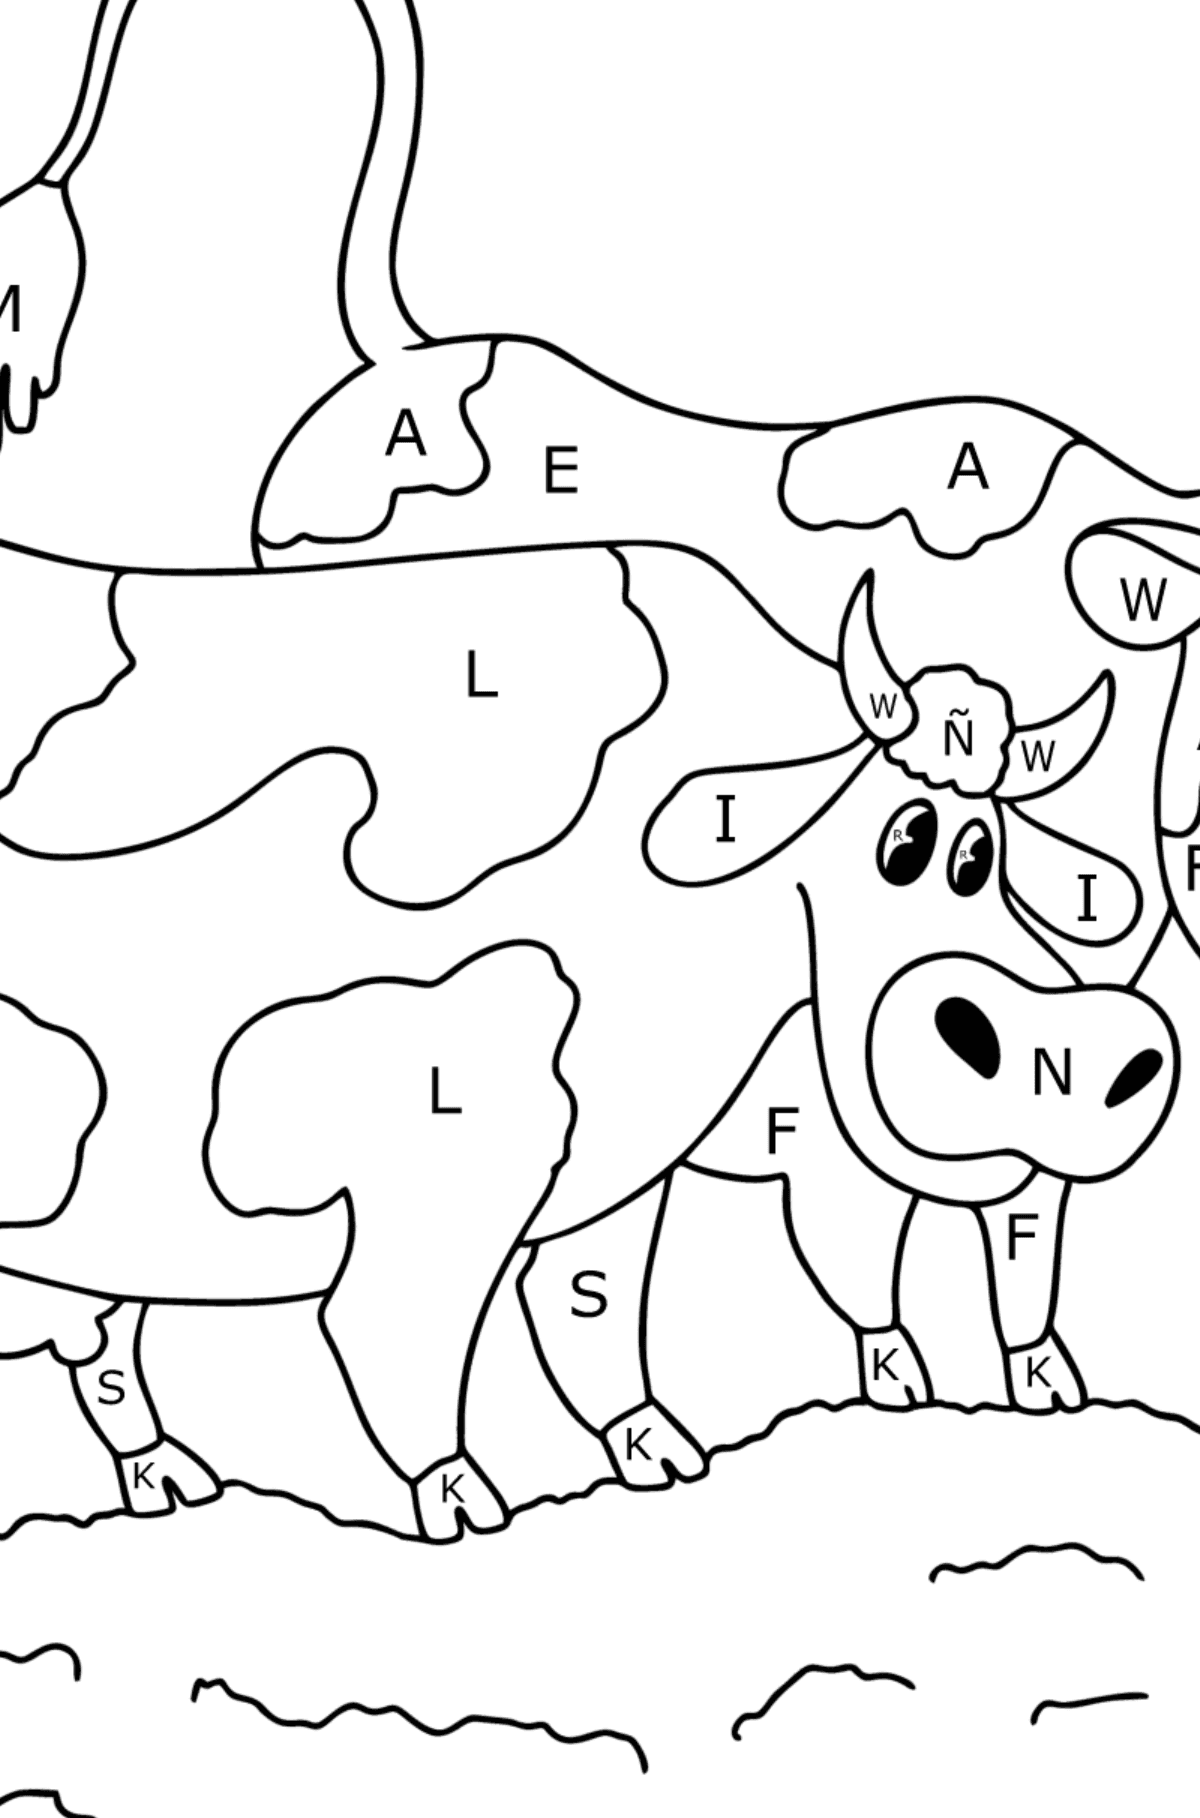 Dibujo de vacas para colorear - Colorear por Letras para Niños